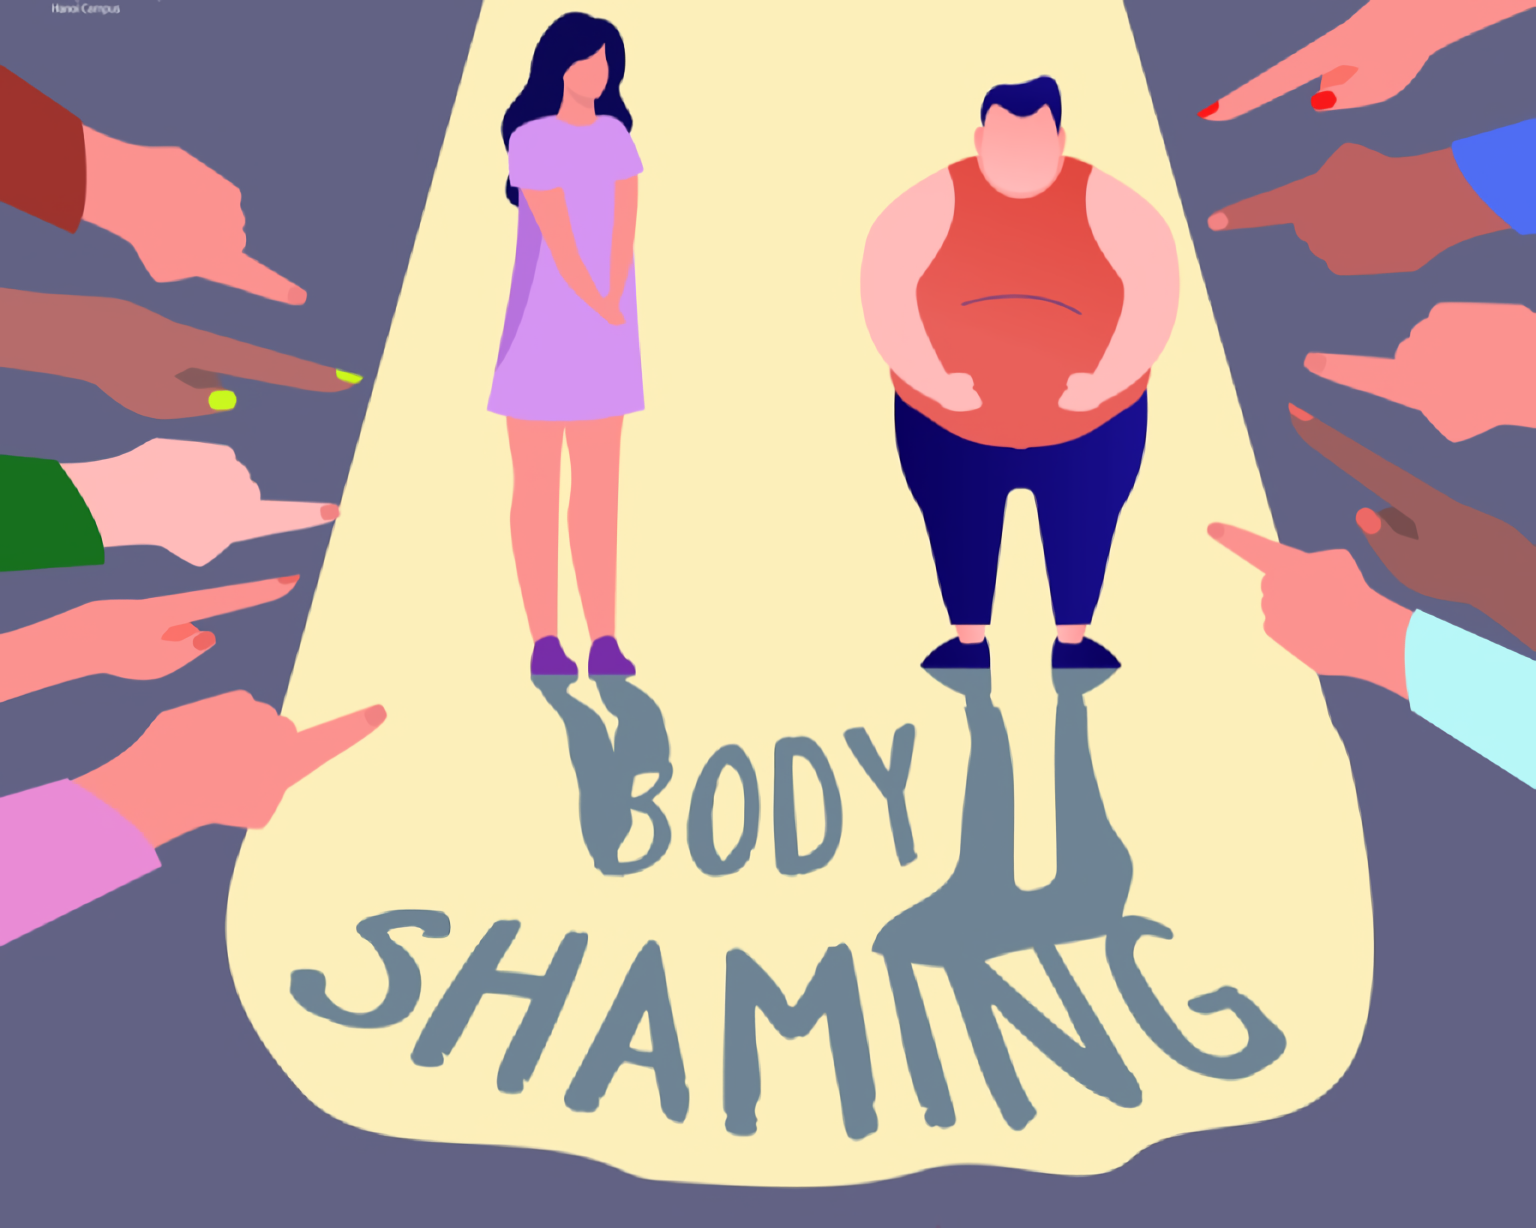 5 Kalimat yang Termasuk Body Shaming